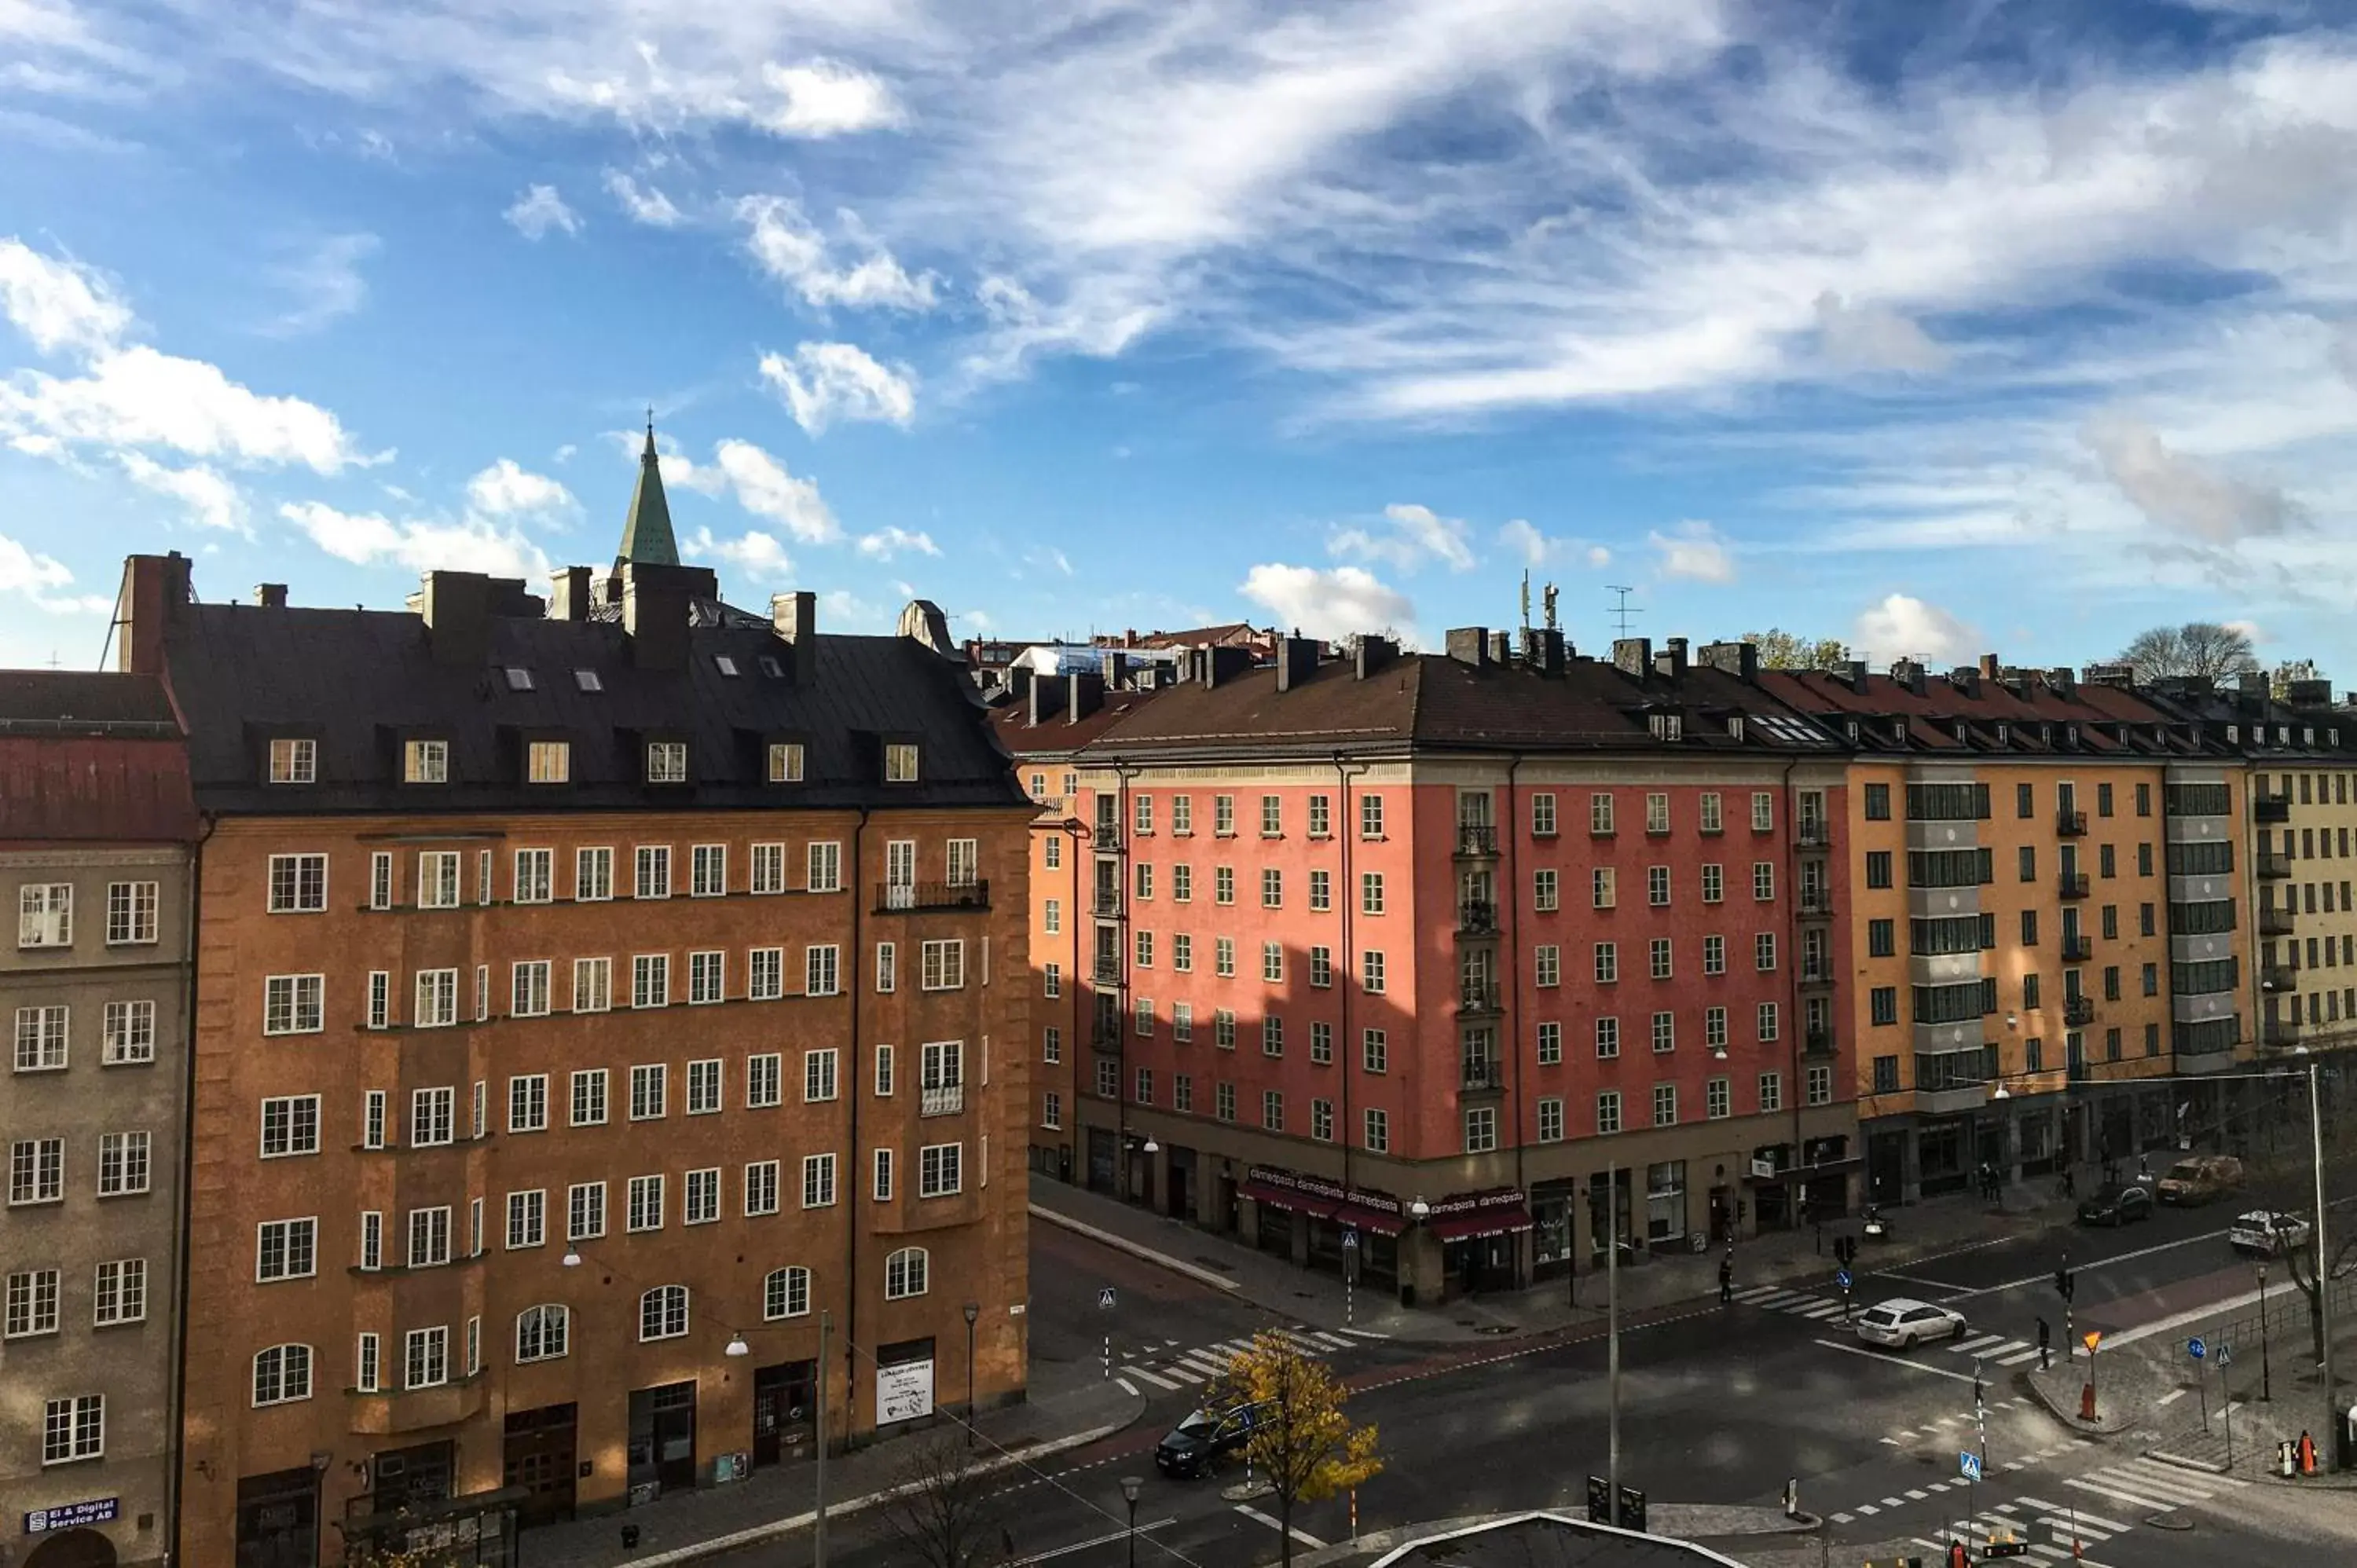 City view in Ersta Hotell & Konferens